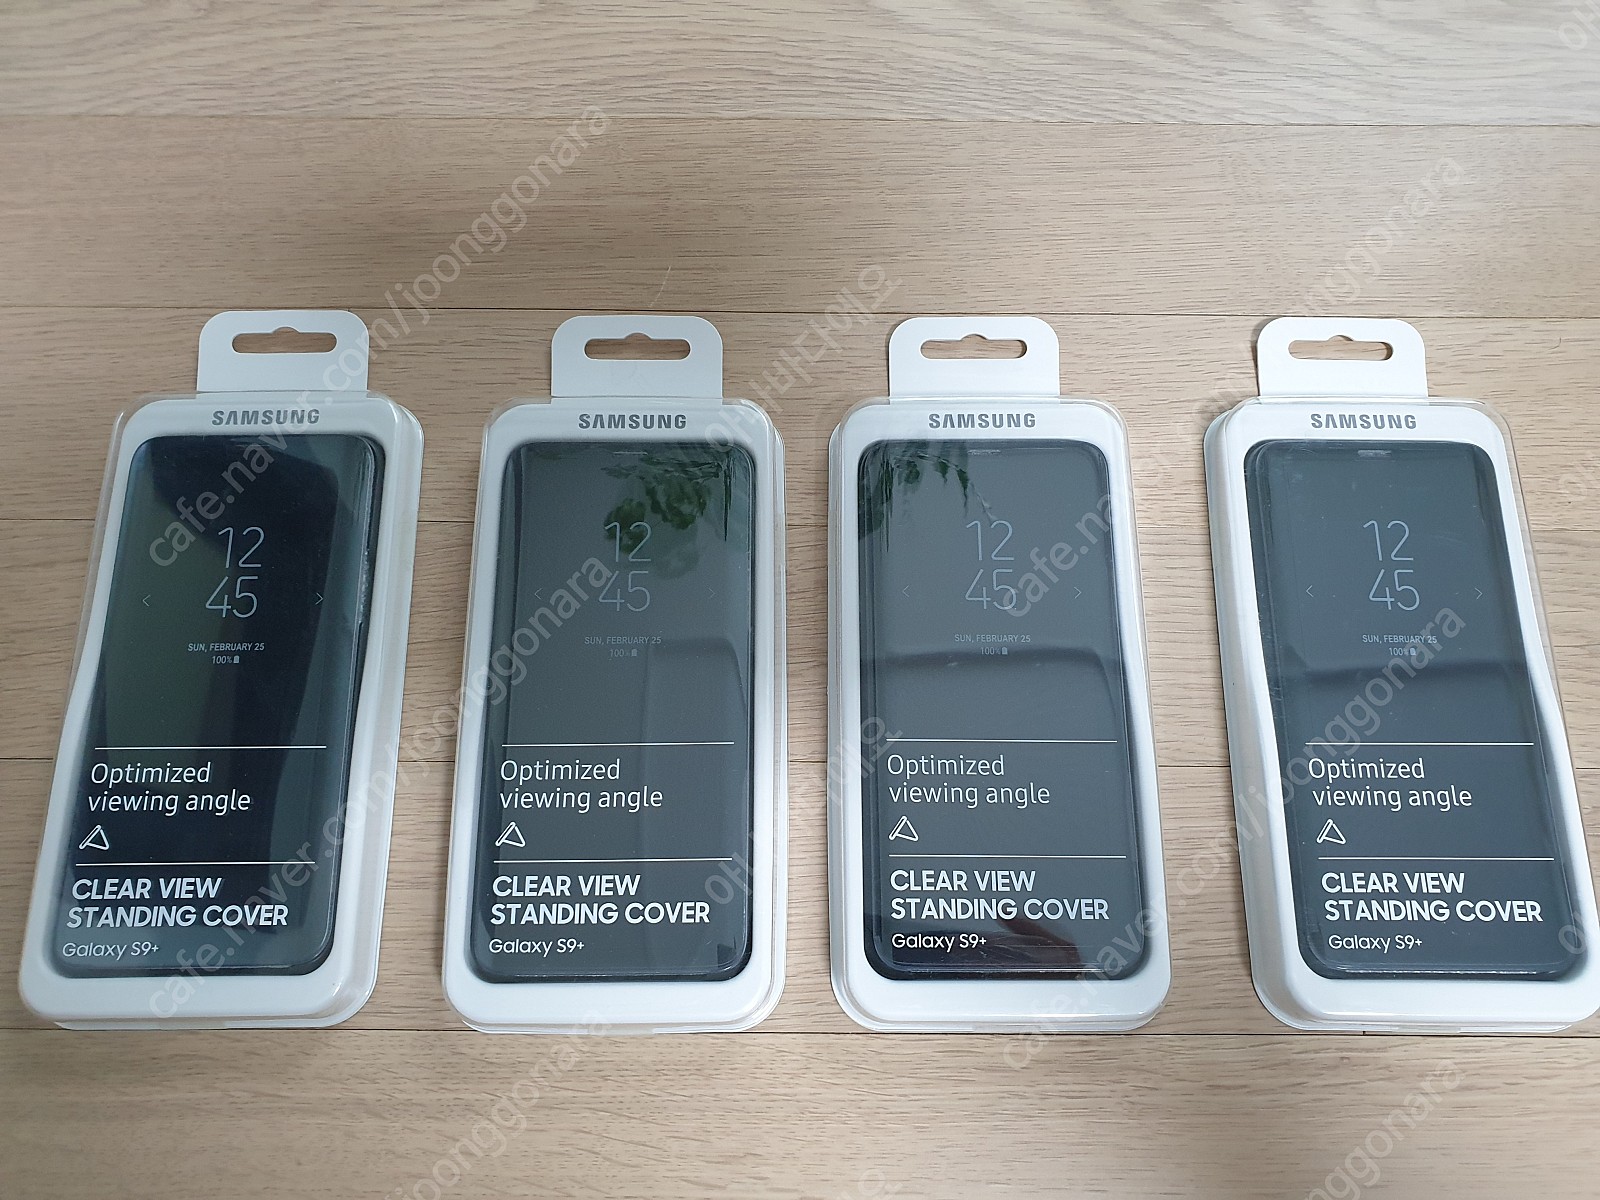 갤럭시 S9+ 삼성 정품 케이스 CLEAR VIEW STANDING(클리어뷰 스탠딩 커버 케이스)팝니다.